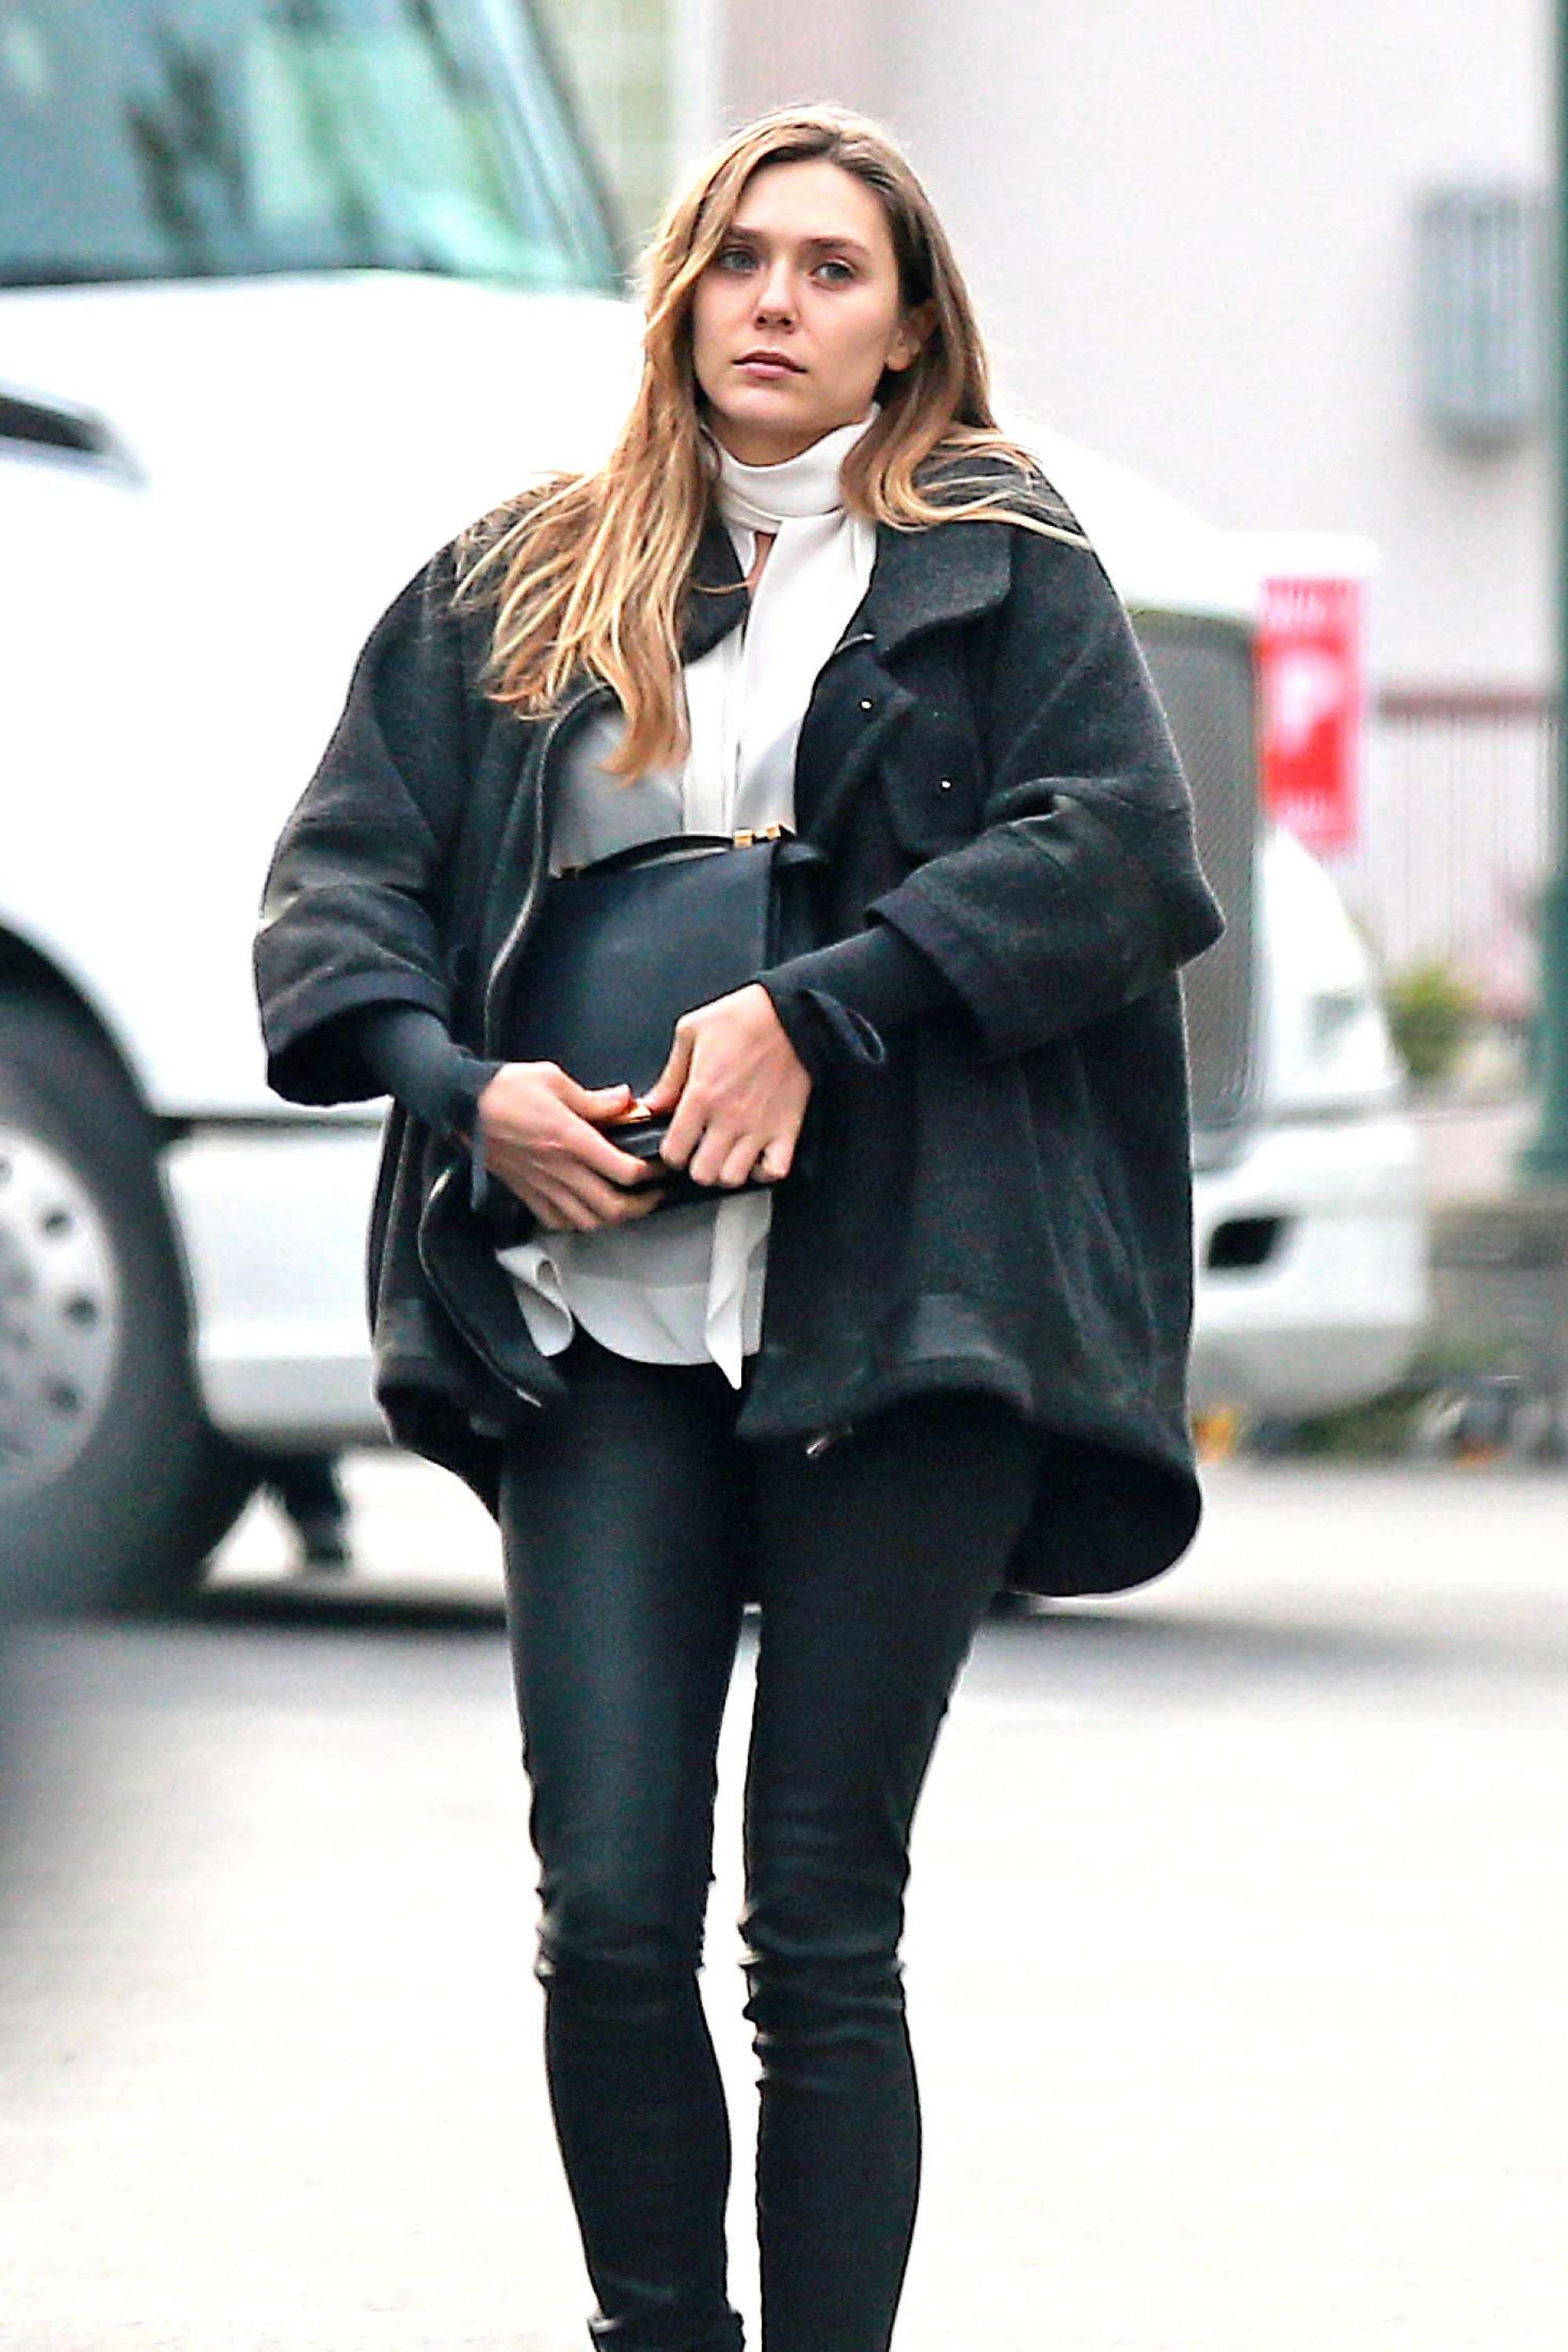 Elizabeth Olsen out in LA